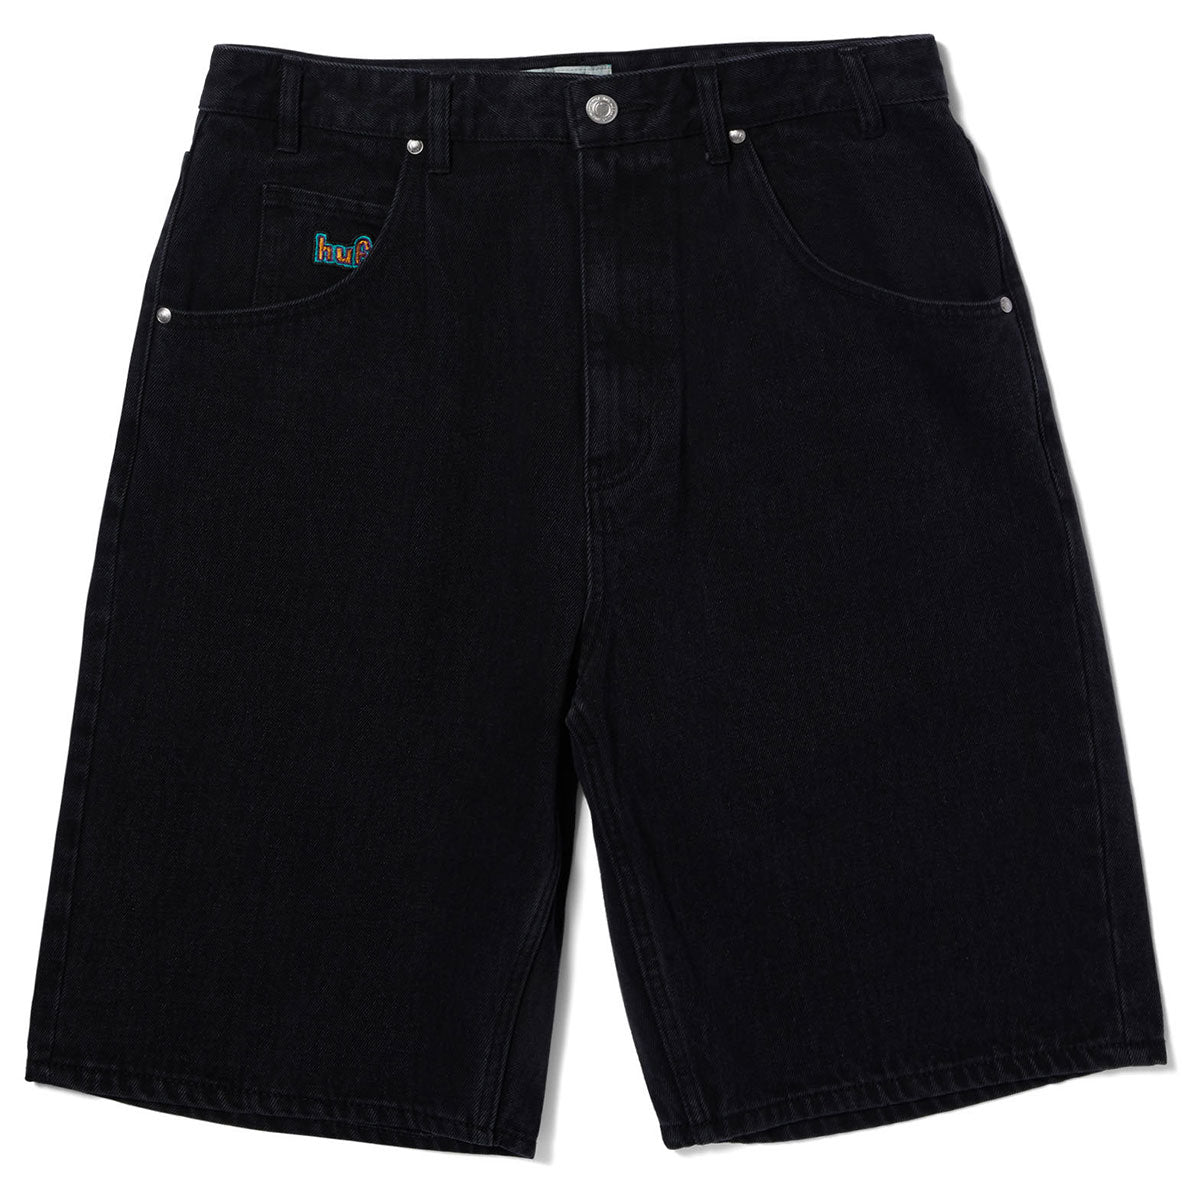 HUF Cromer Shorts - Washed Black image 1